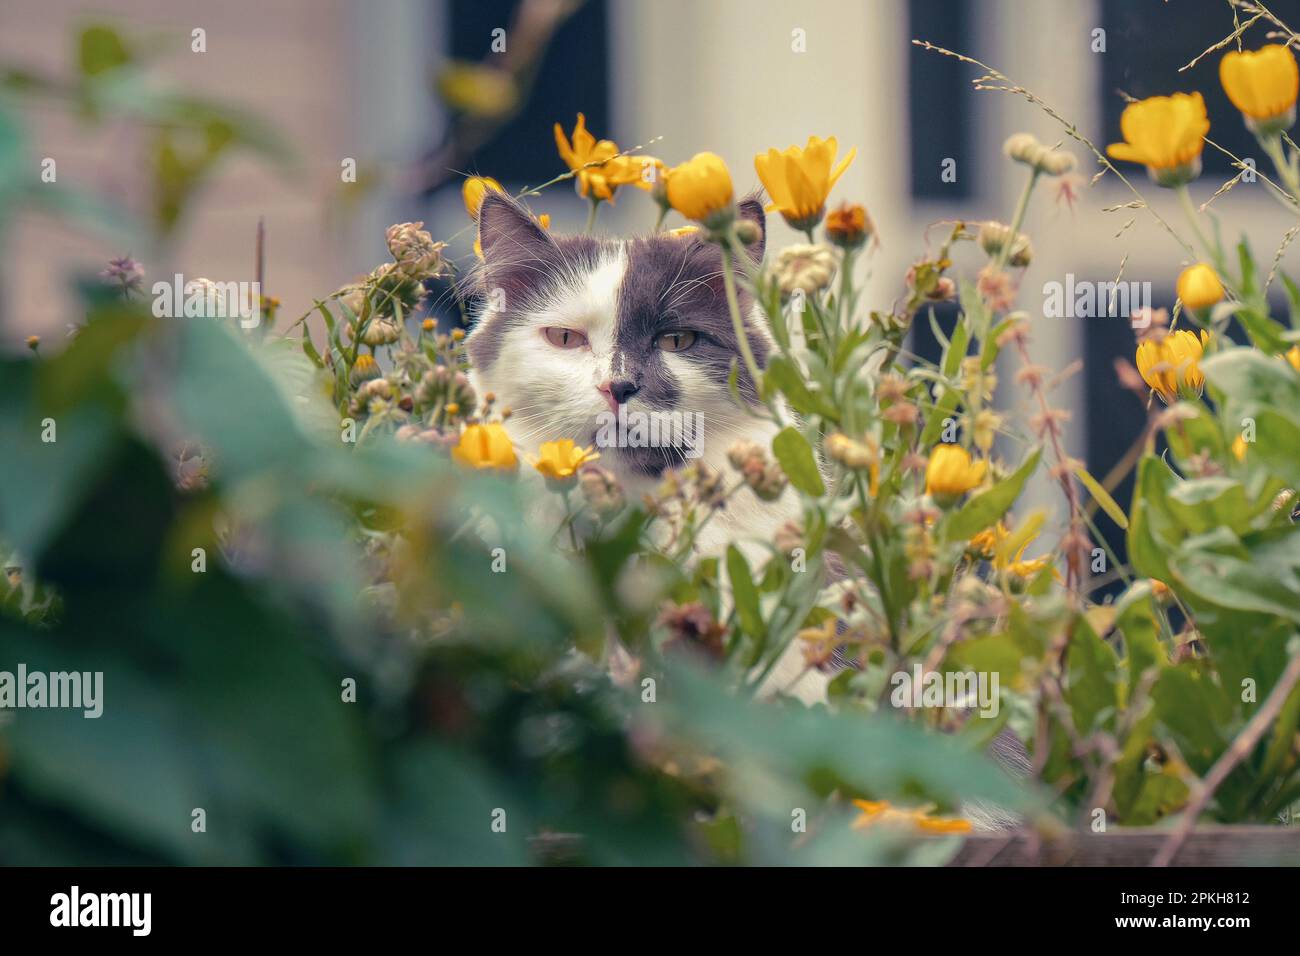 Graue und weiße, langhaarige Hauskatze mit gelben Augen, die sich in den Blumen in einem städtischen Garten verstecken. Stockfoto